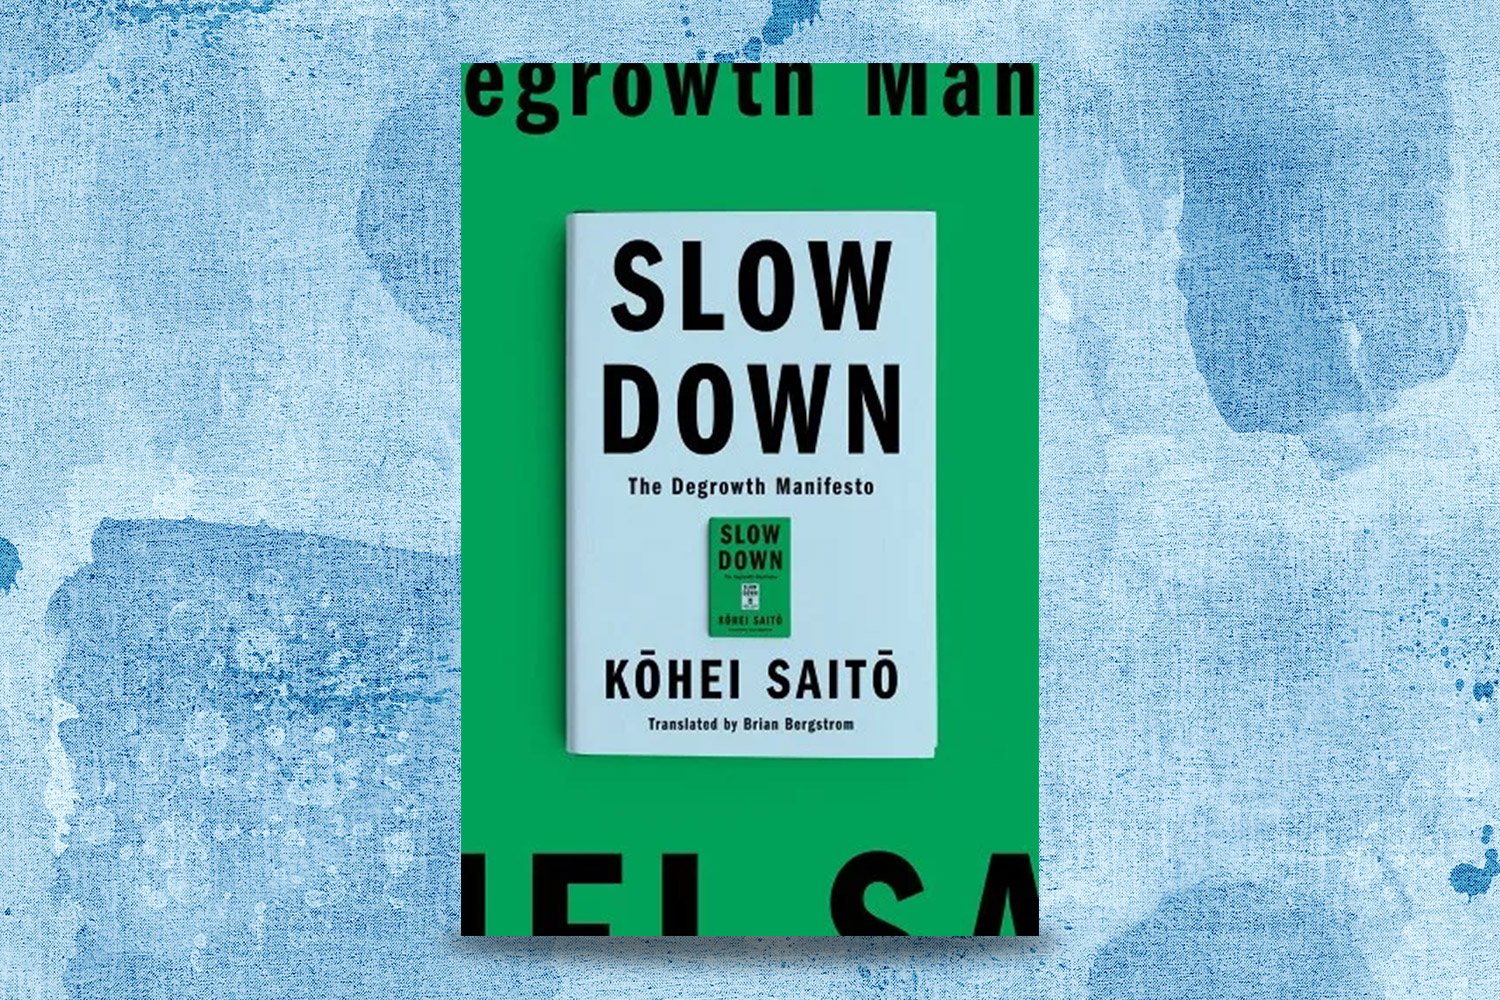 Kohei Saito, Slow Down: The Degrowth Manifesto